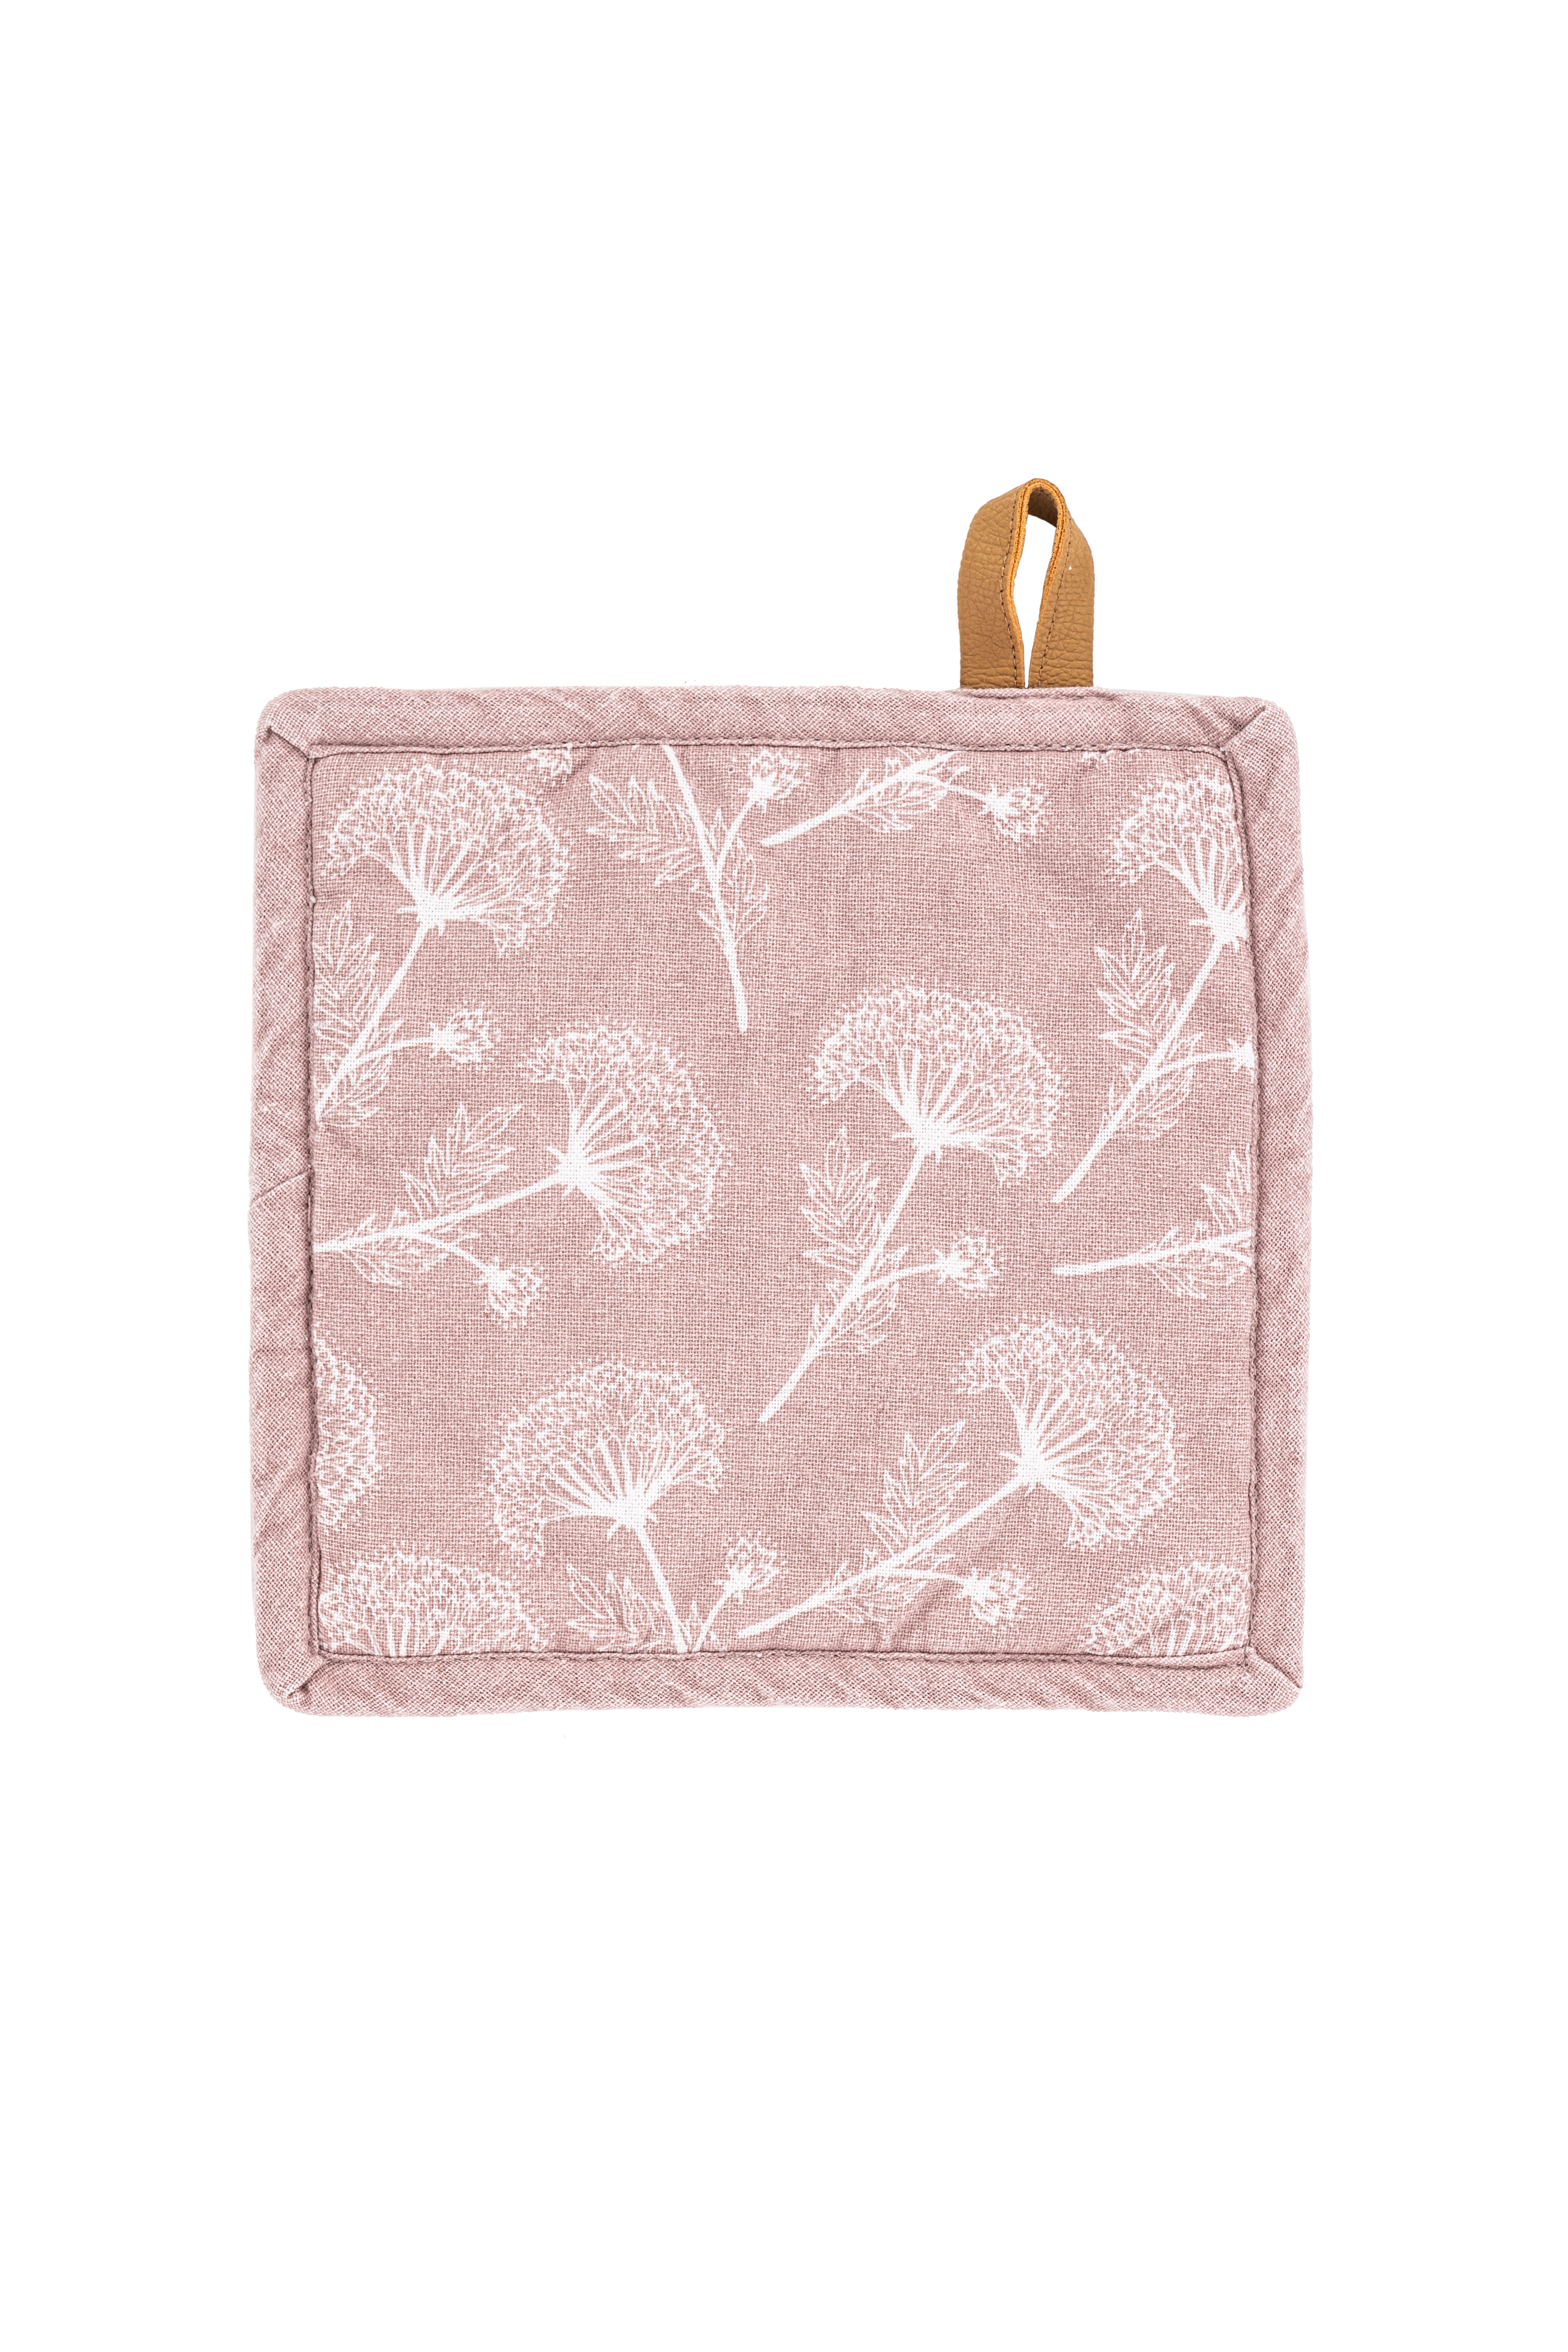 Potholder MYRNA, floral printed, 20x20cm - set/2, pink